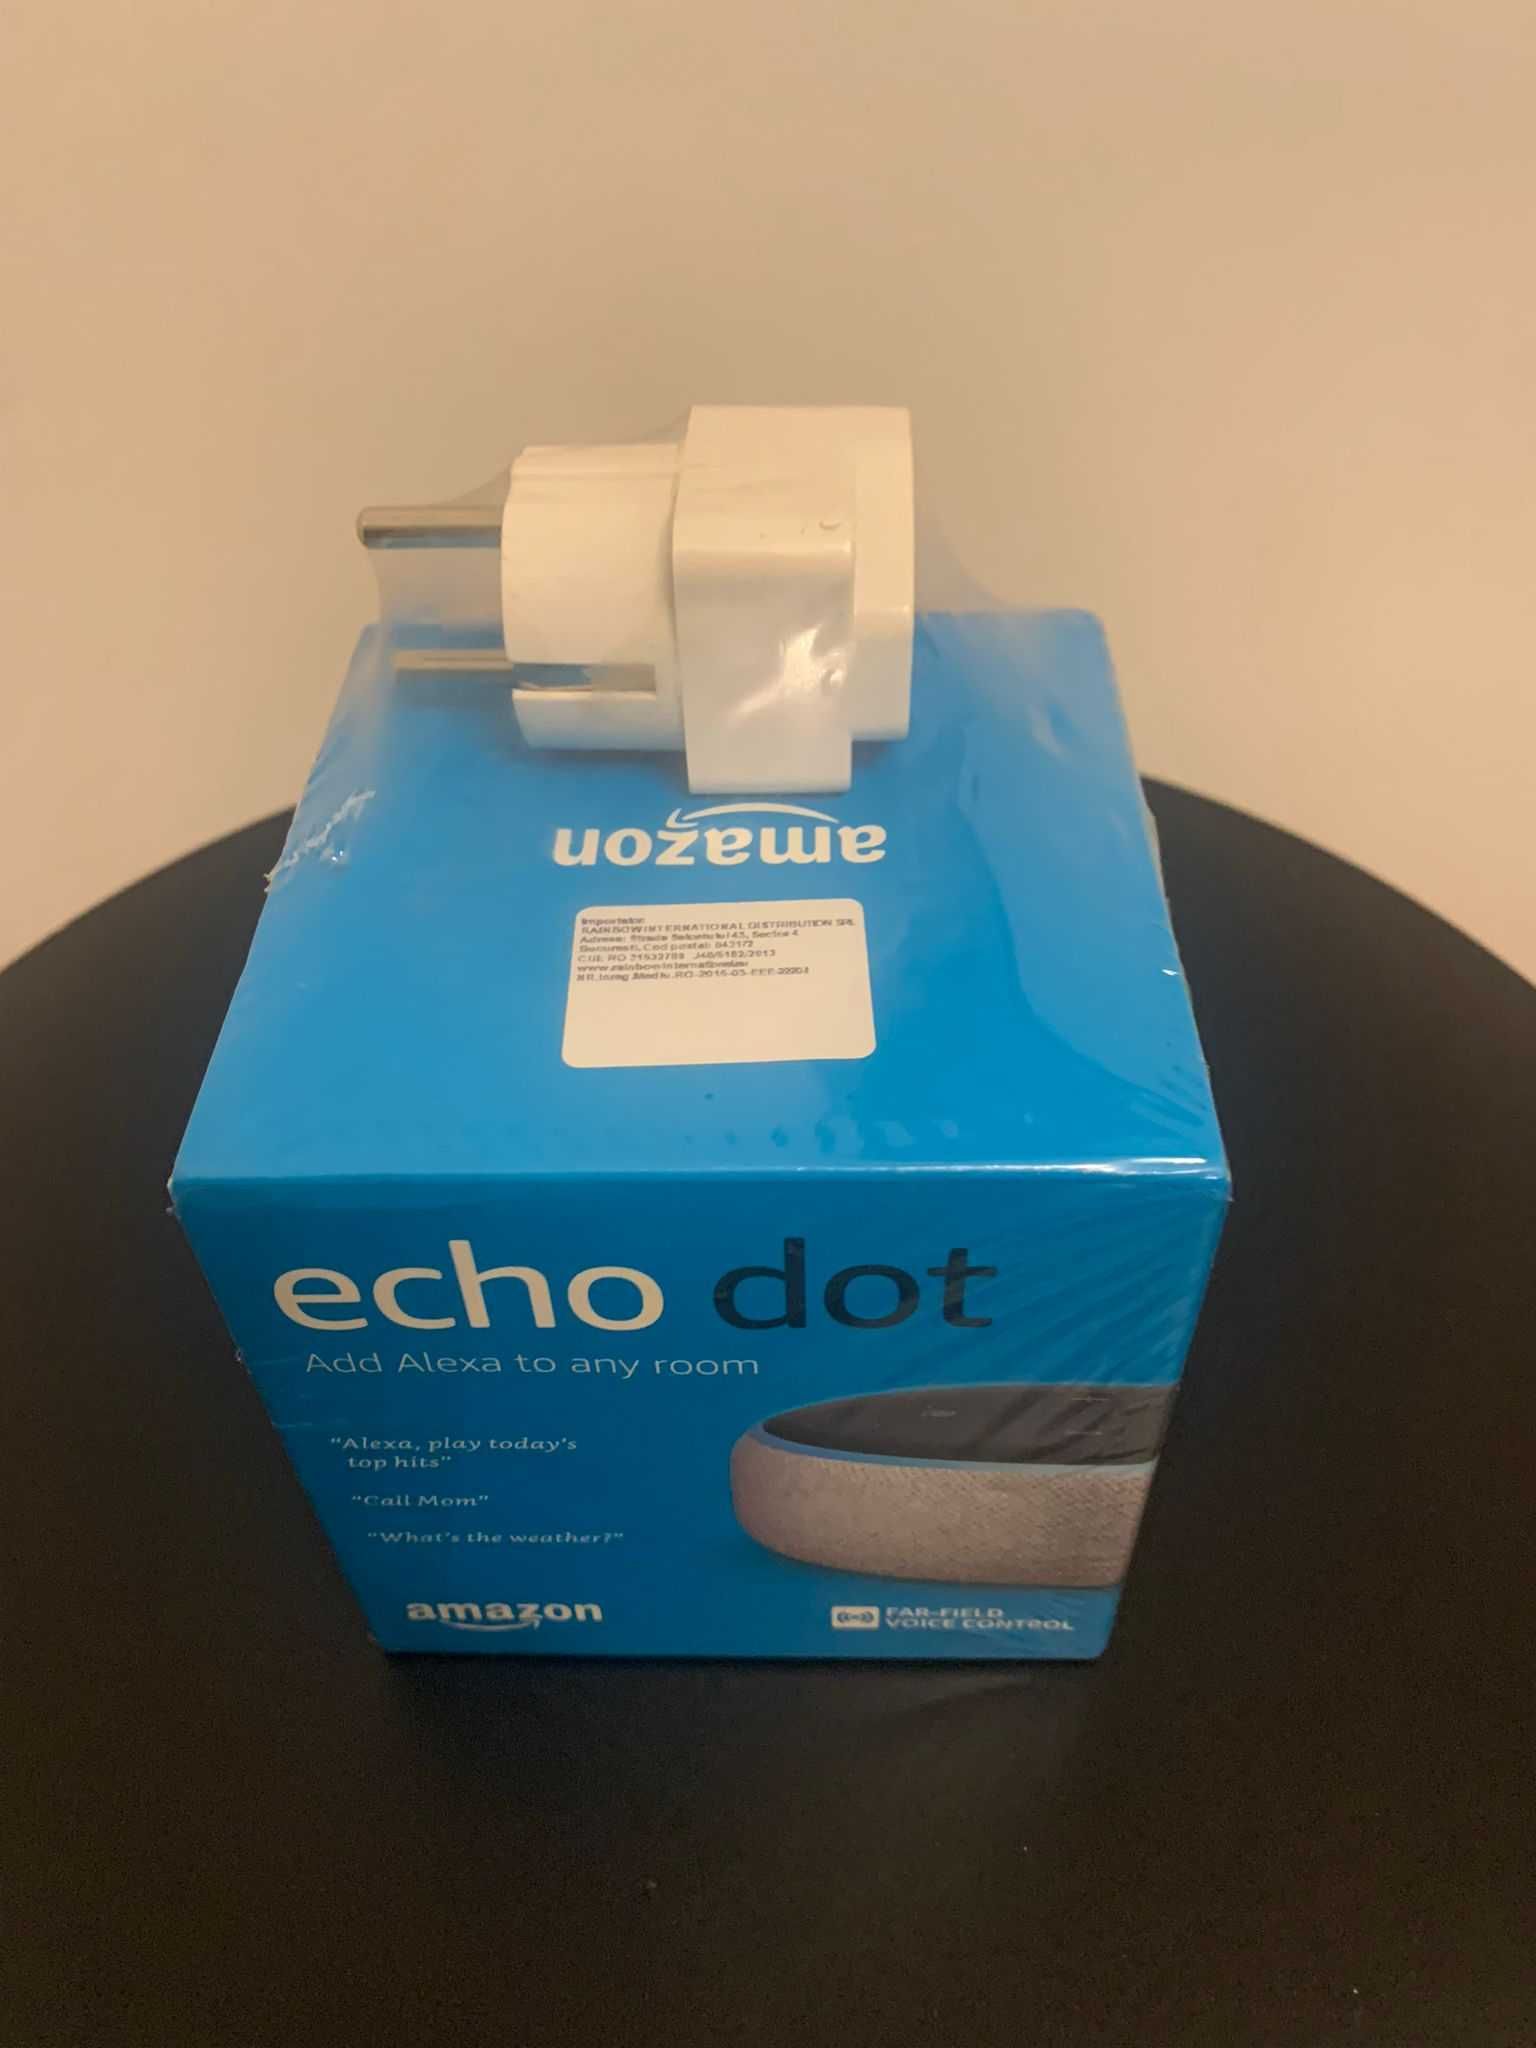 Boxa Amazon Alexa Echo DOT 3, noua, sigilata